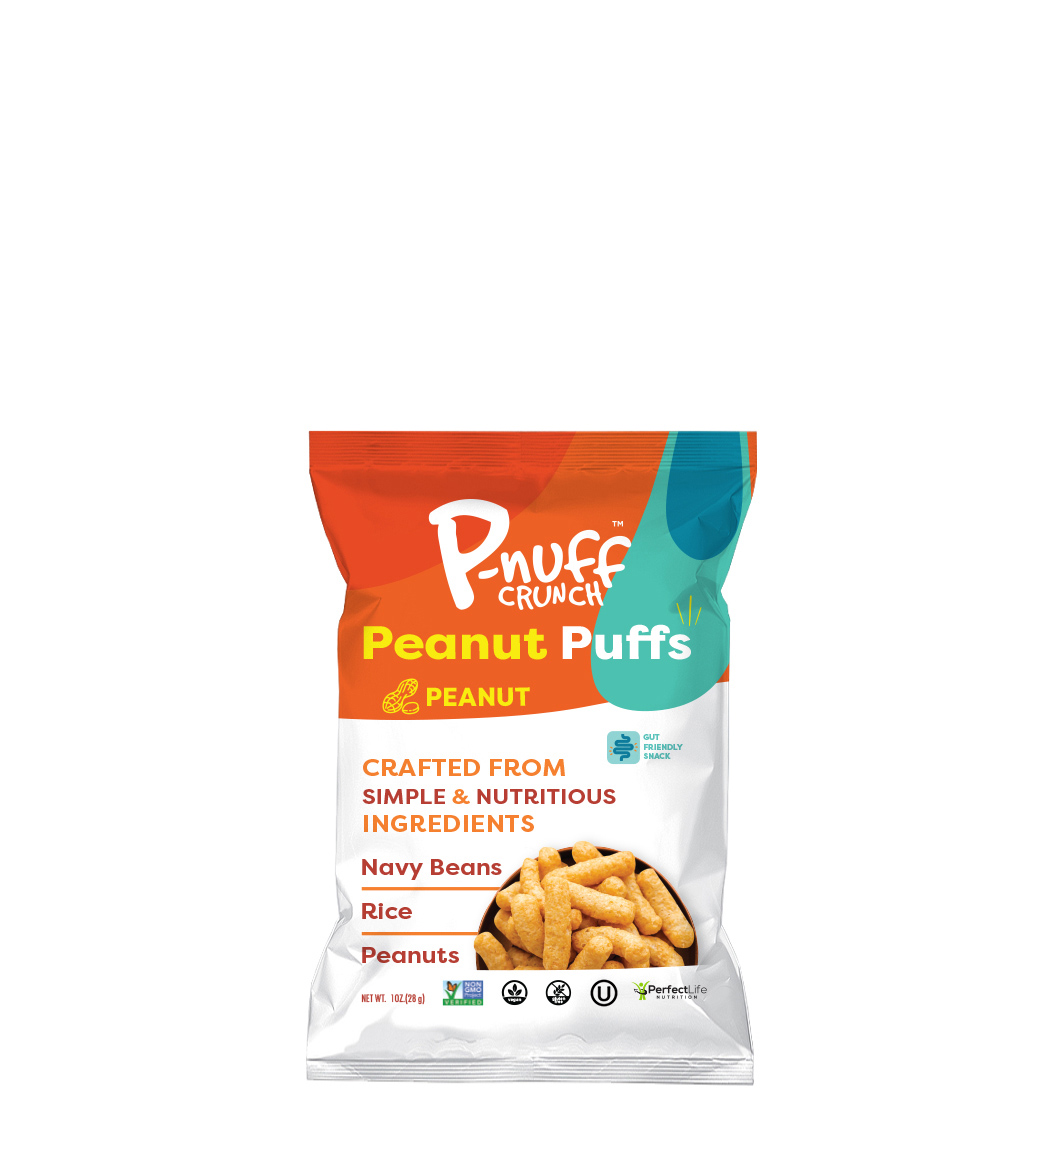 P-nuff Crunch Original 6 units per case 1.0 oz